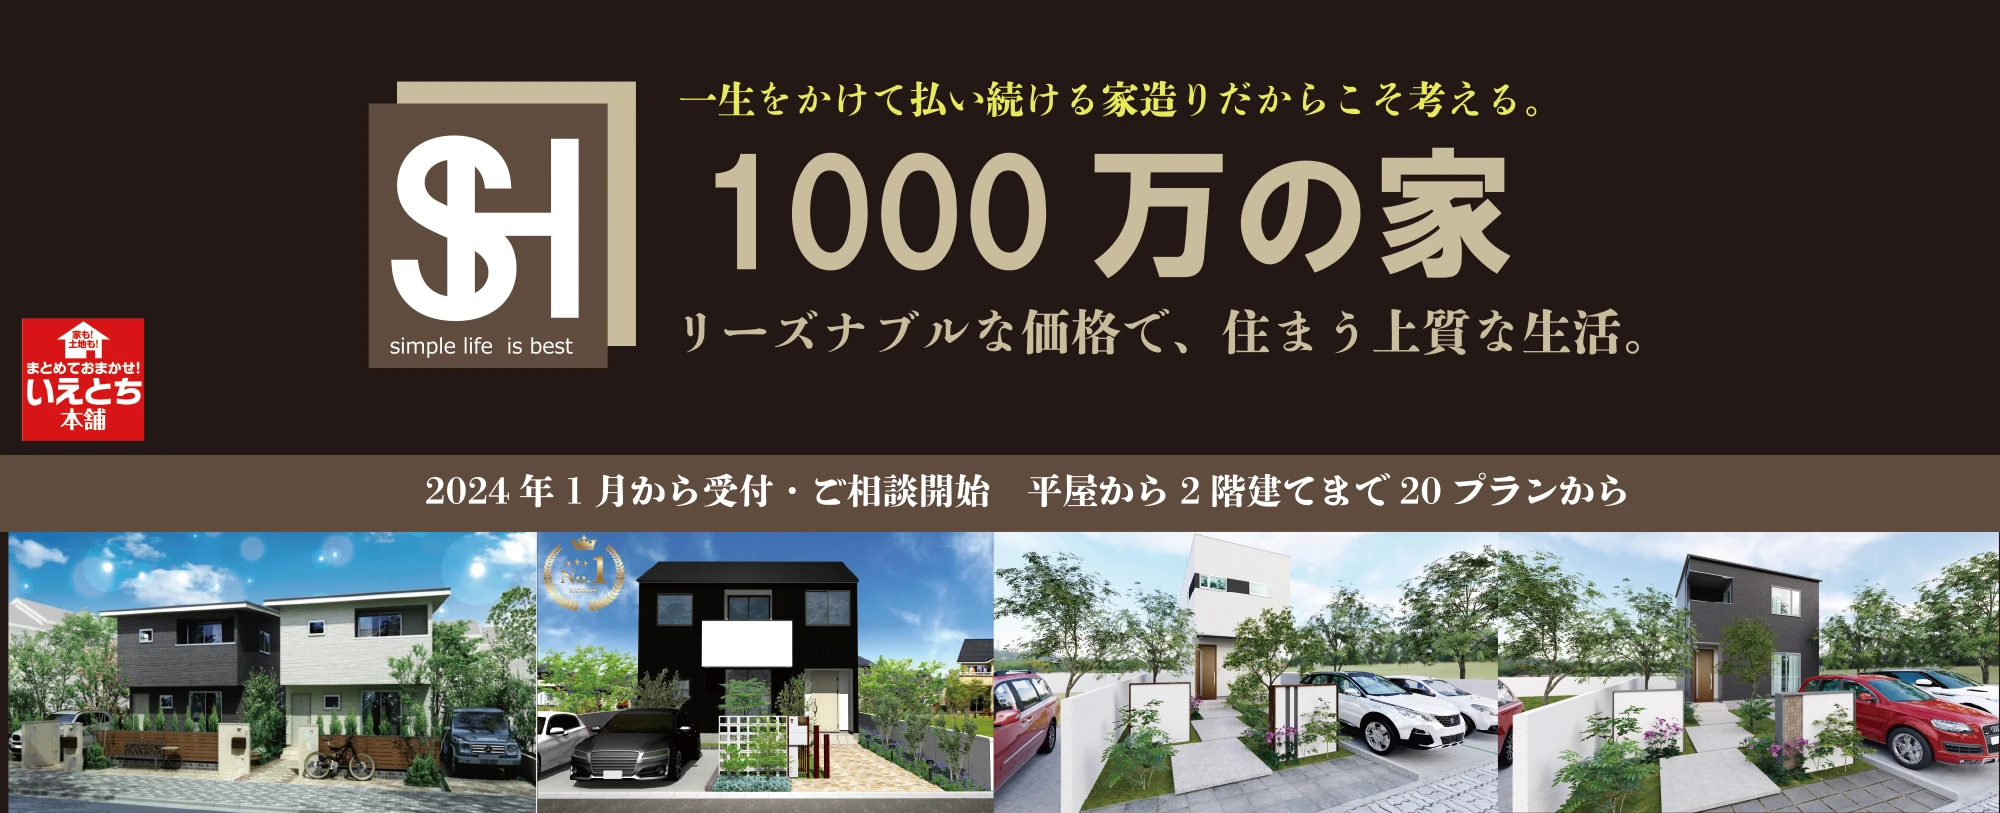 1000万円の家